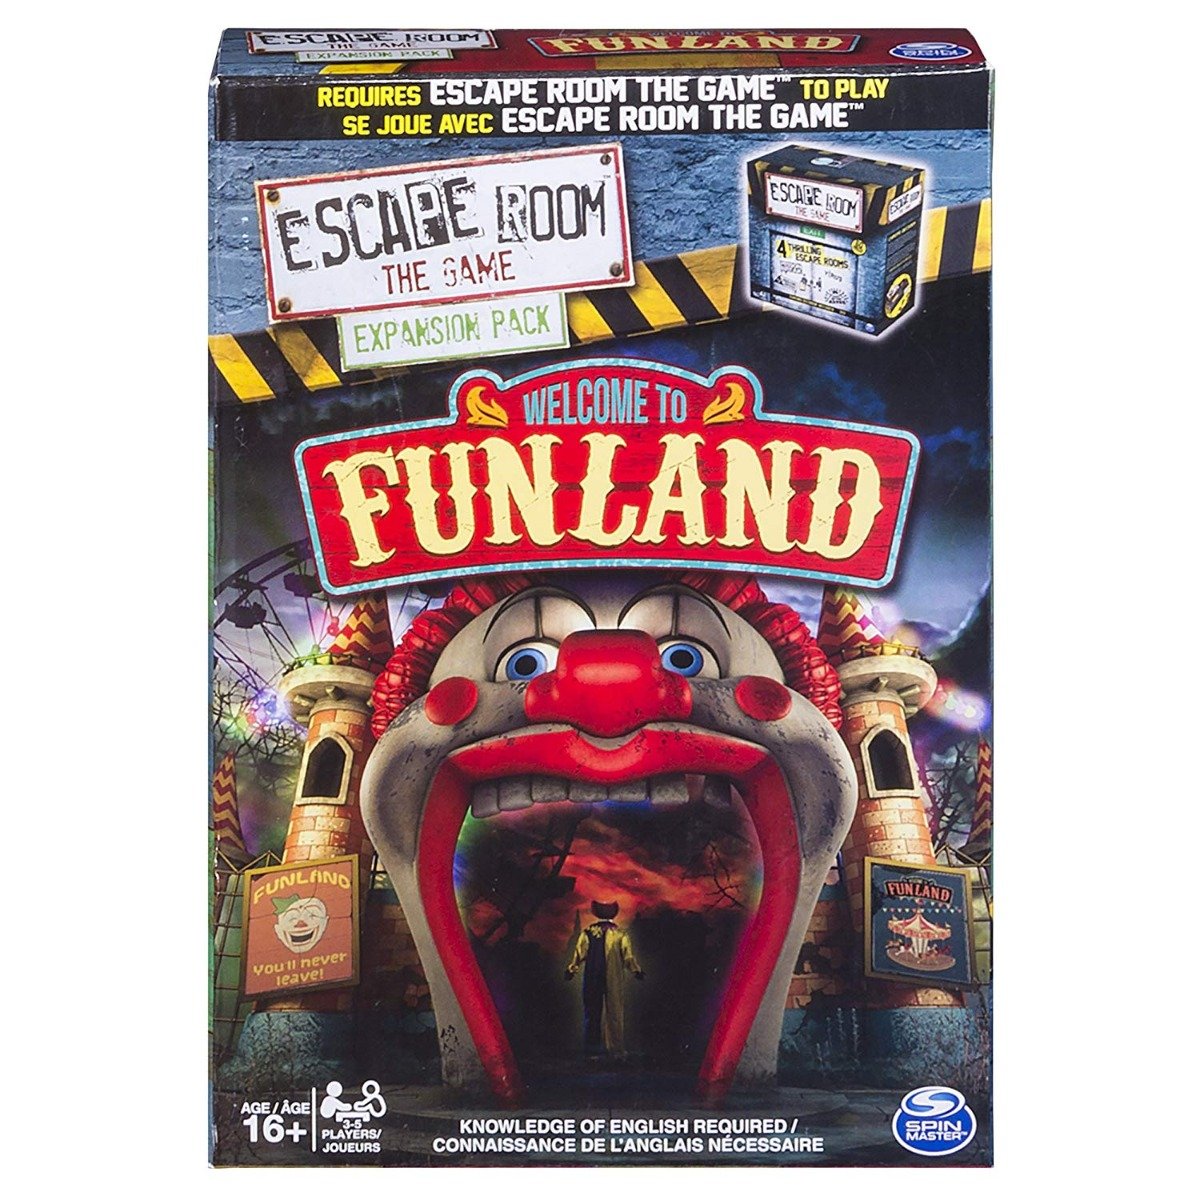 Joc de societate Escape Room Extension Pack Funland Escape Room